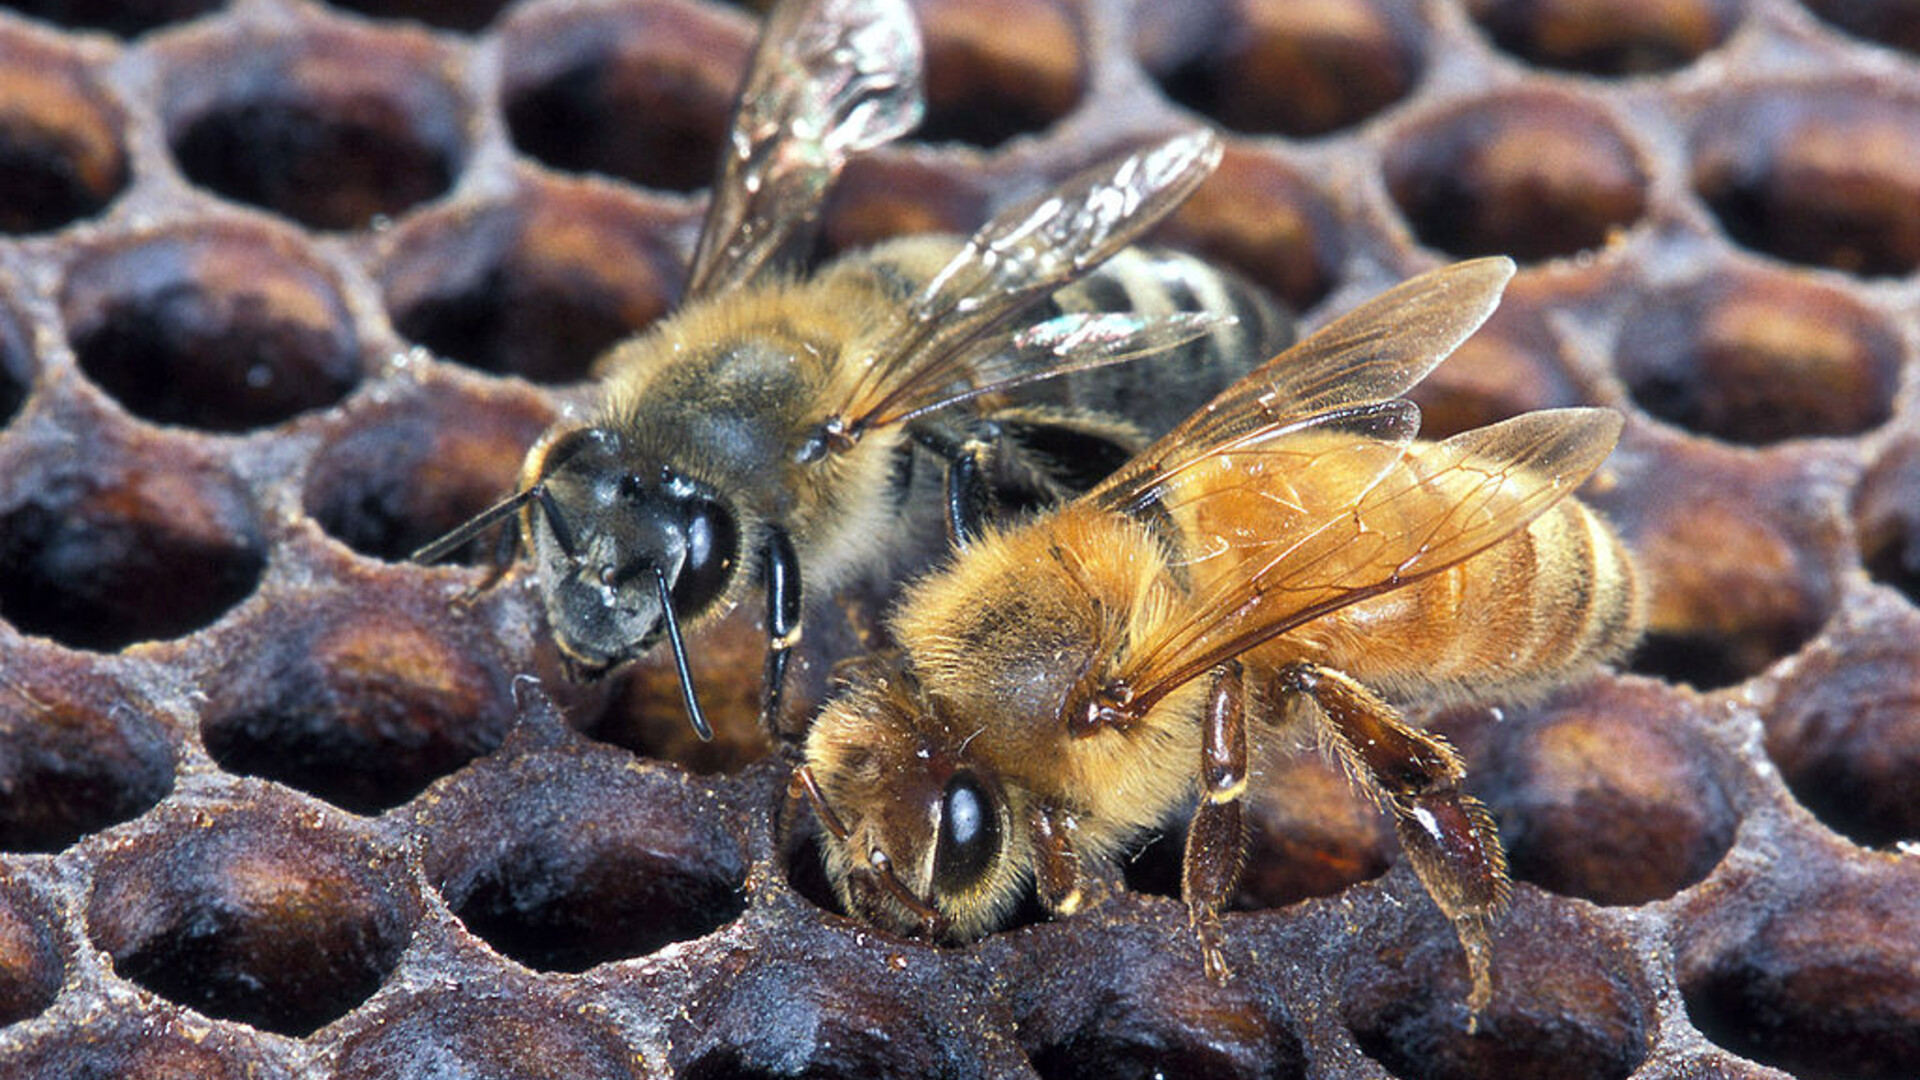 Stabenow Retirement, Honeybee Vaccine, and John Deere Innovations